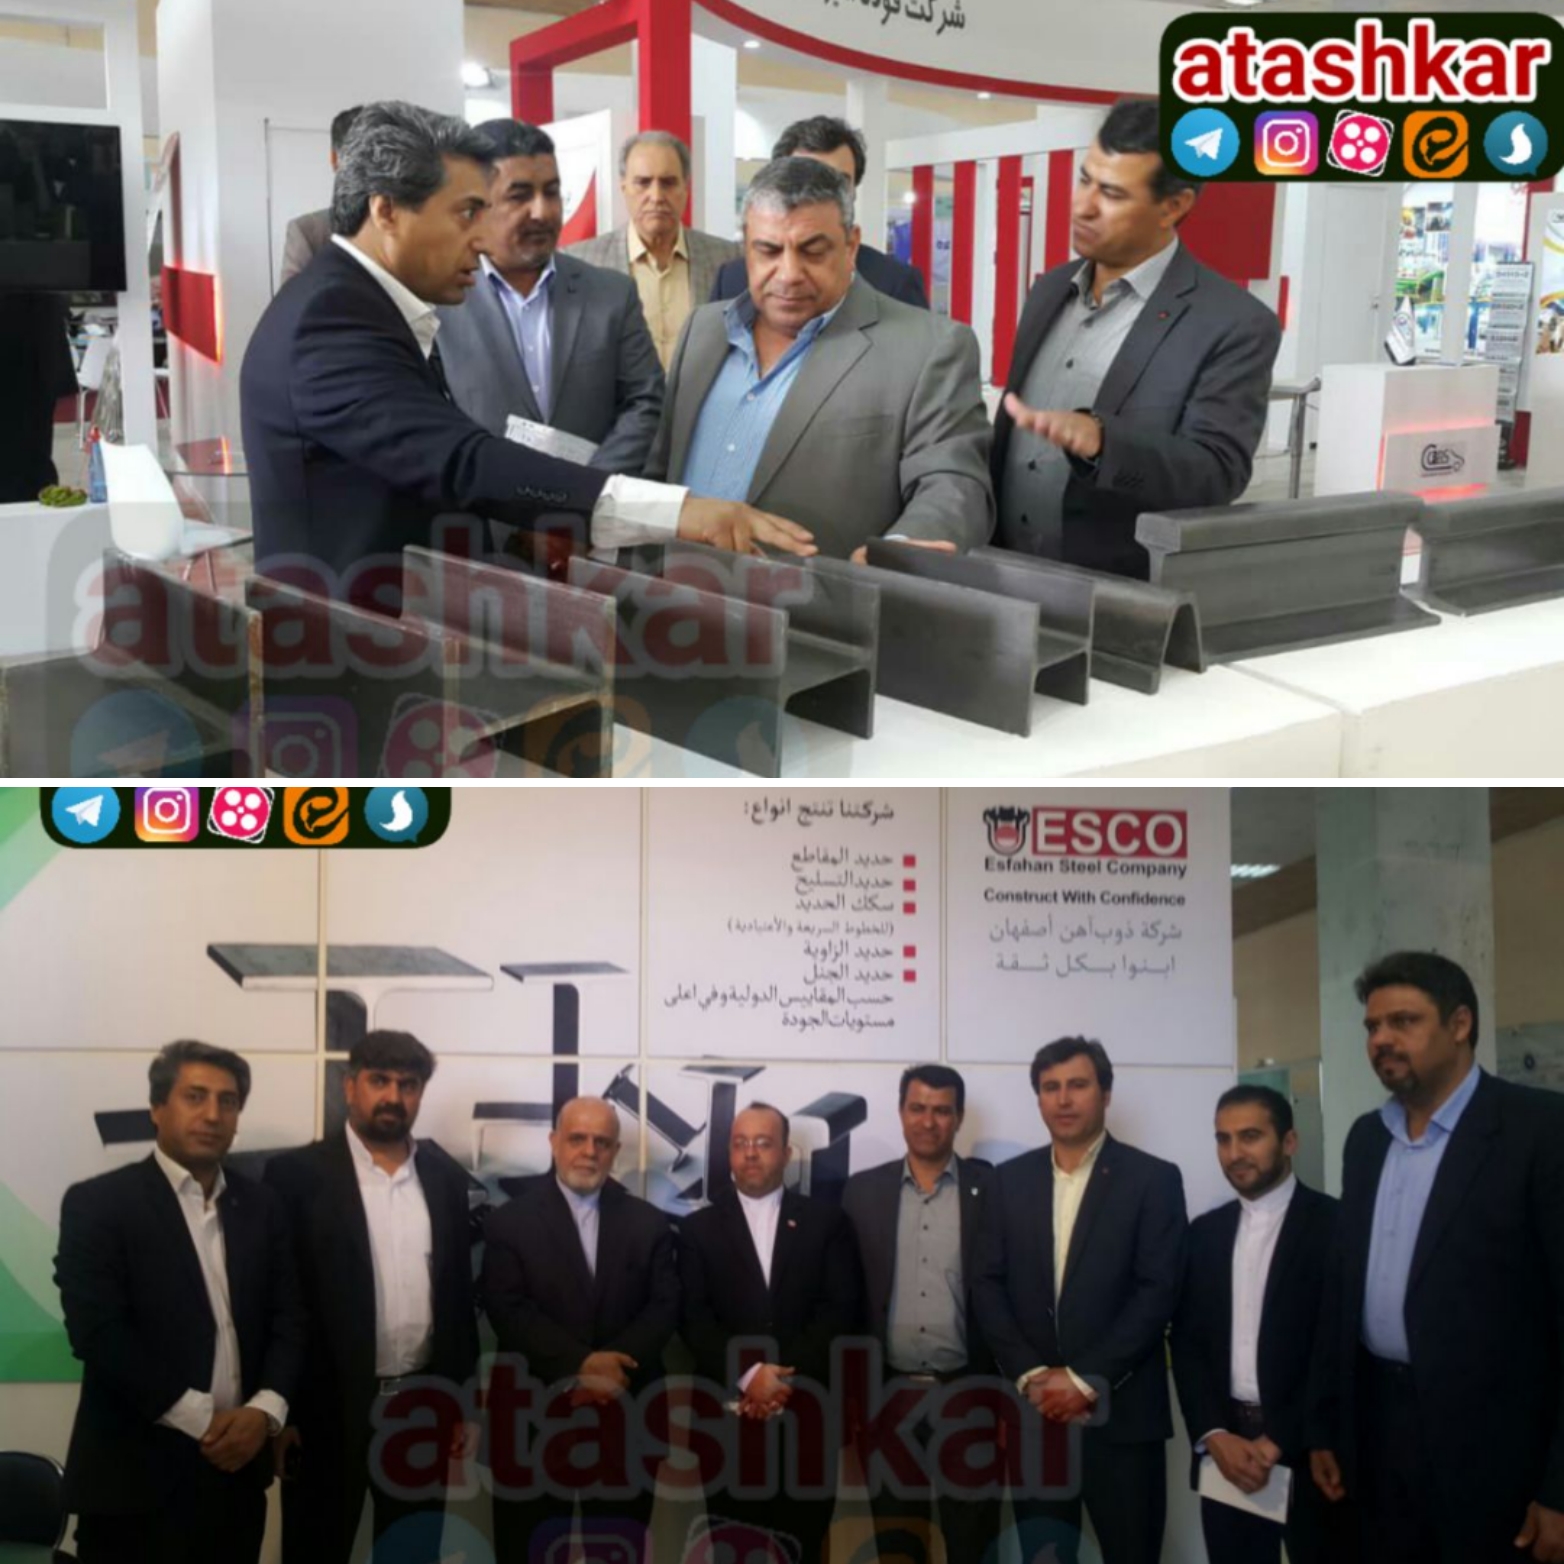 تاکید سفیر ایران در عراق بر گسترش عرضه محصولات ذوب آهن در بازارهای منطقه